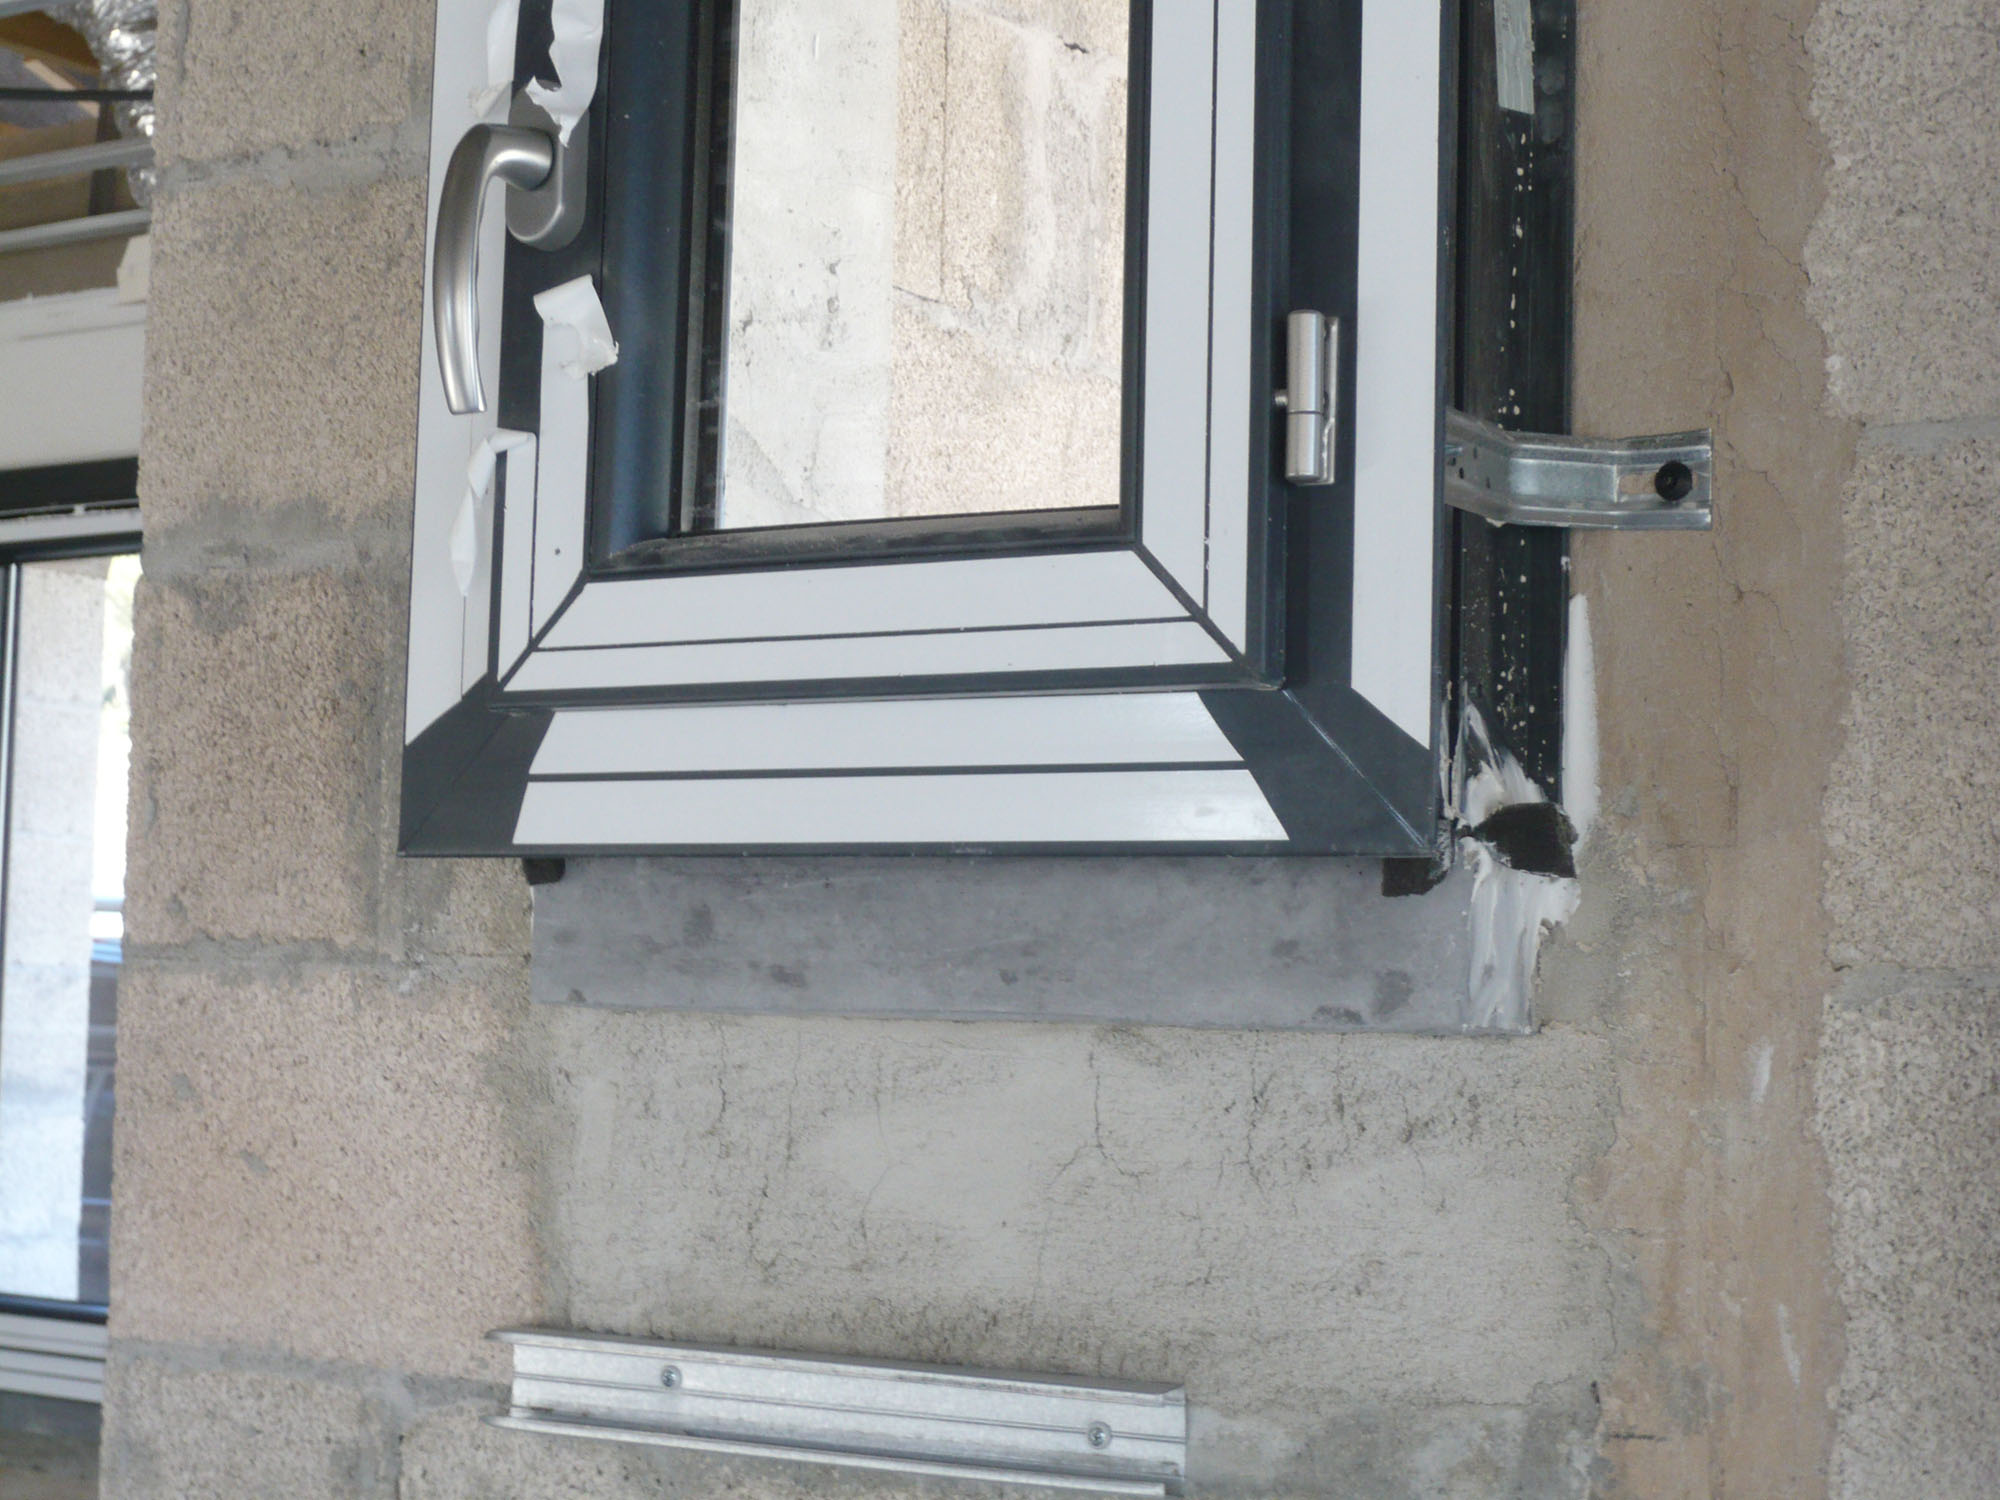 Comment poser un appui de fenêtre préfabriqué ?